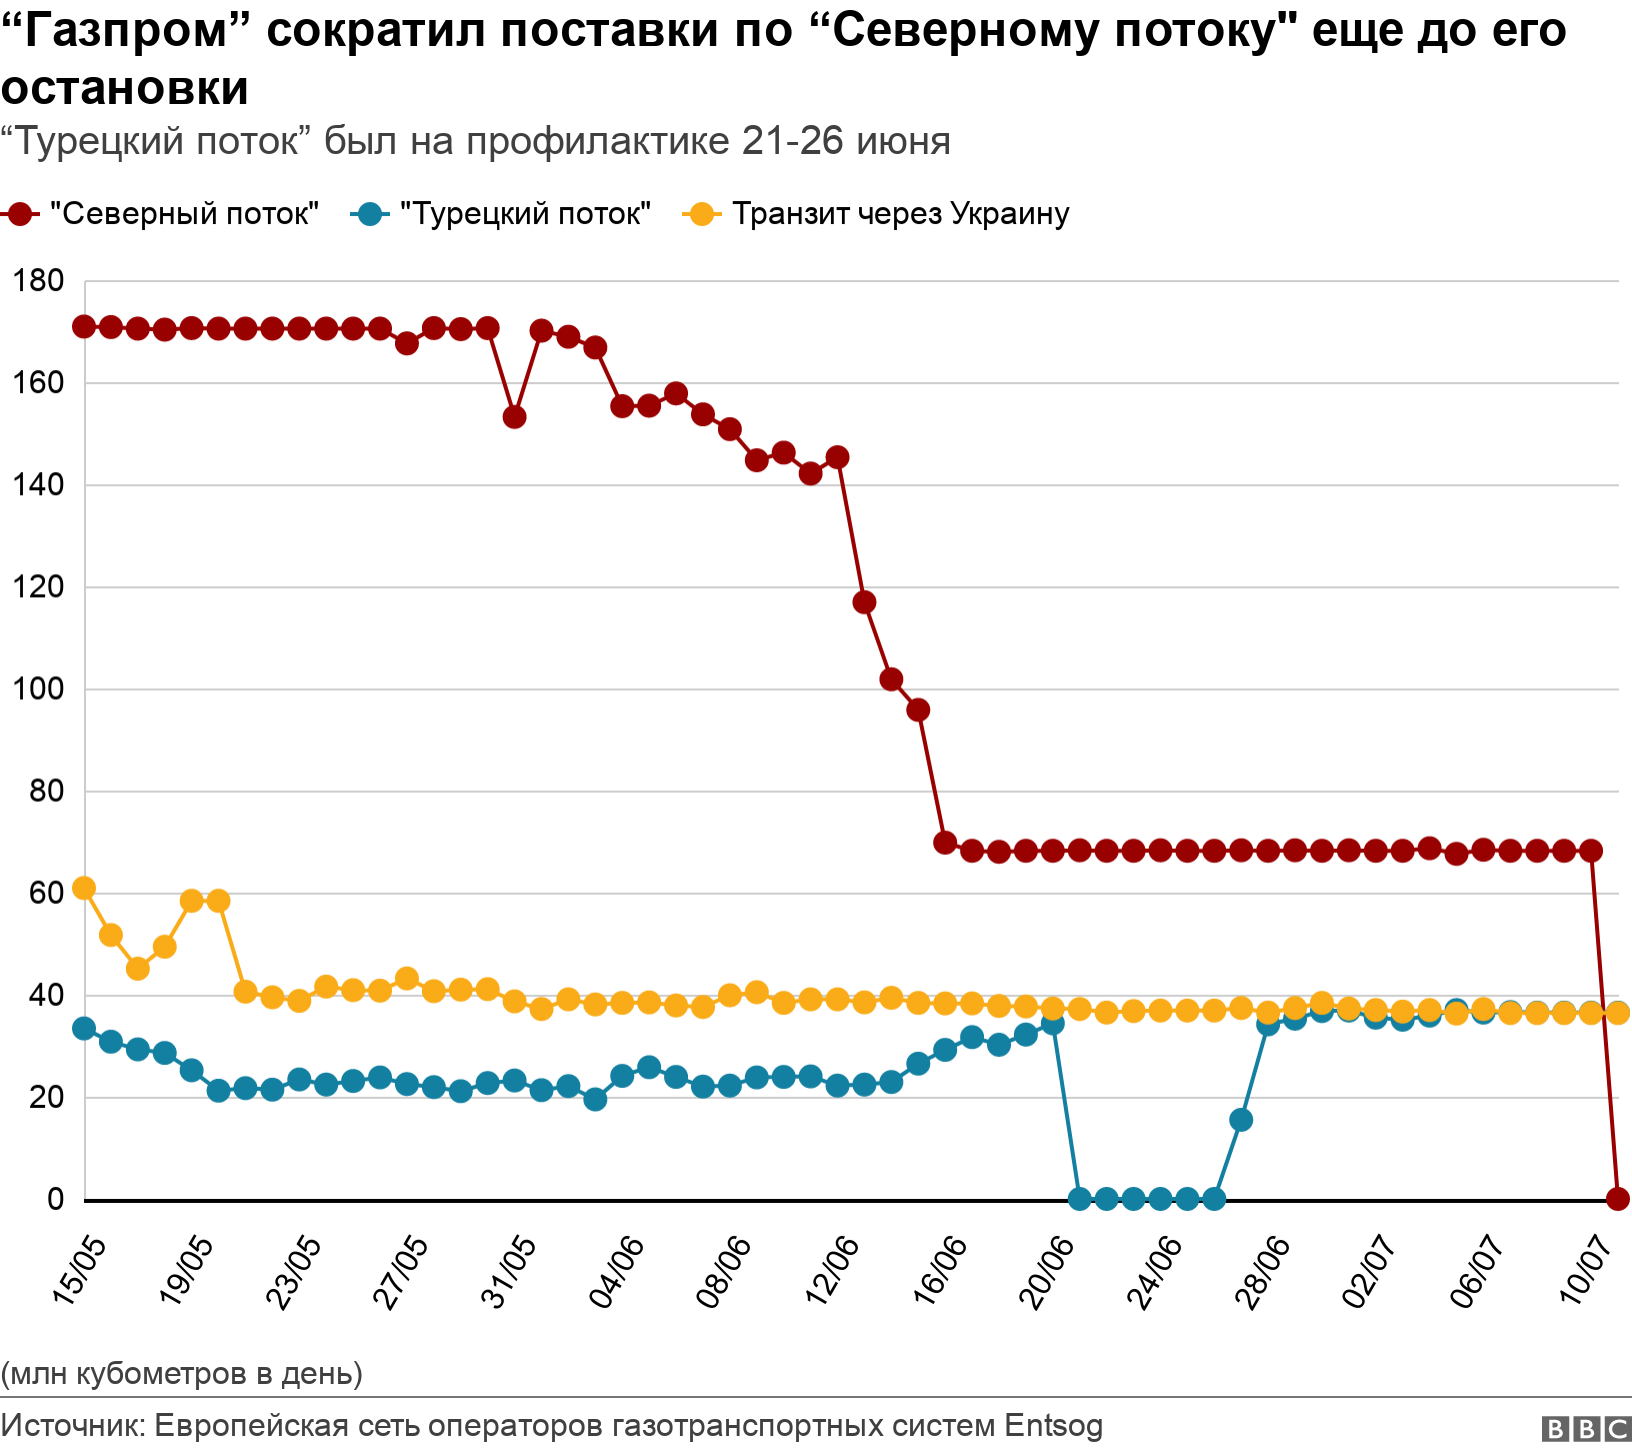 “Газпром” в 2,5 раза сократил поставки по “Северному потоку" в начале июня. А с 21 июня остановил на плановую профилактику “Турецкий поток”.  (млн кубометров в день).